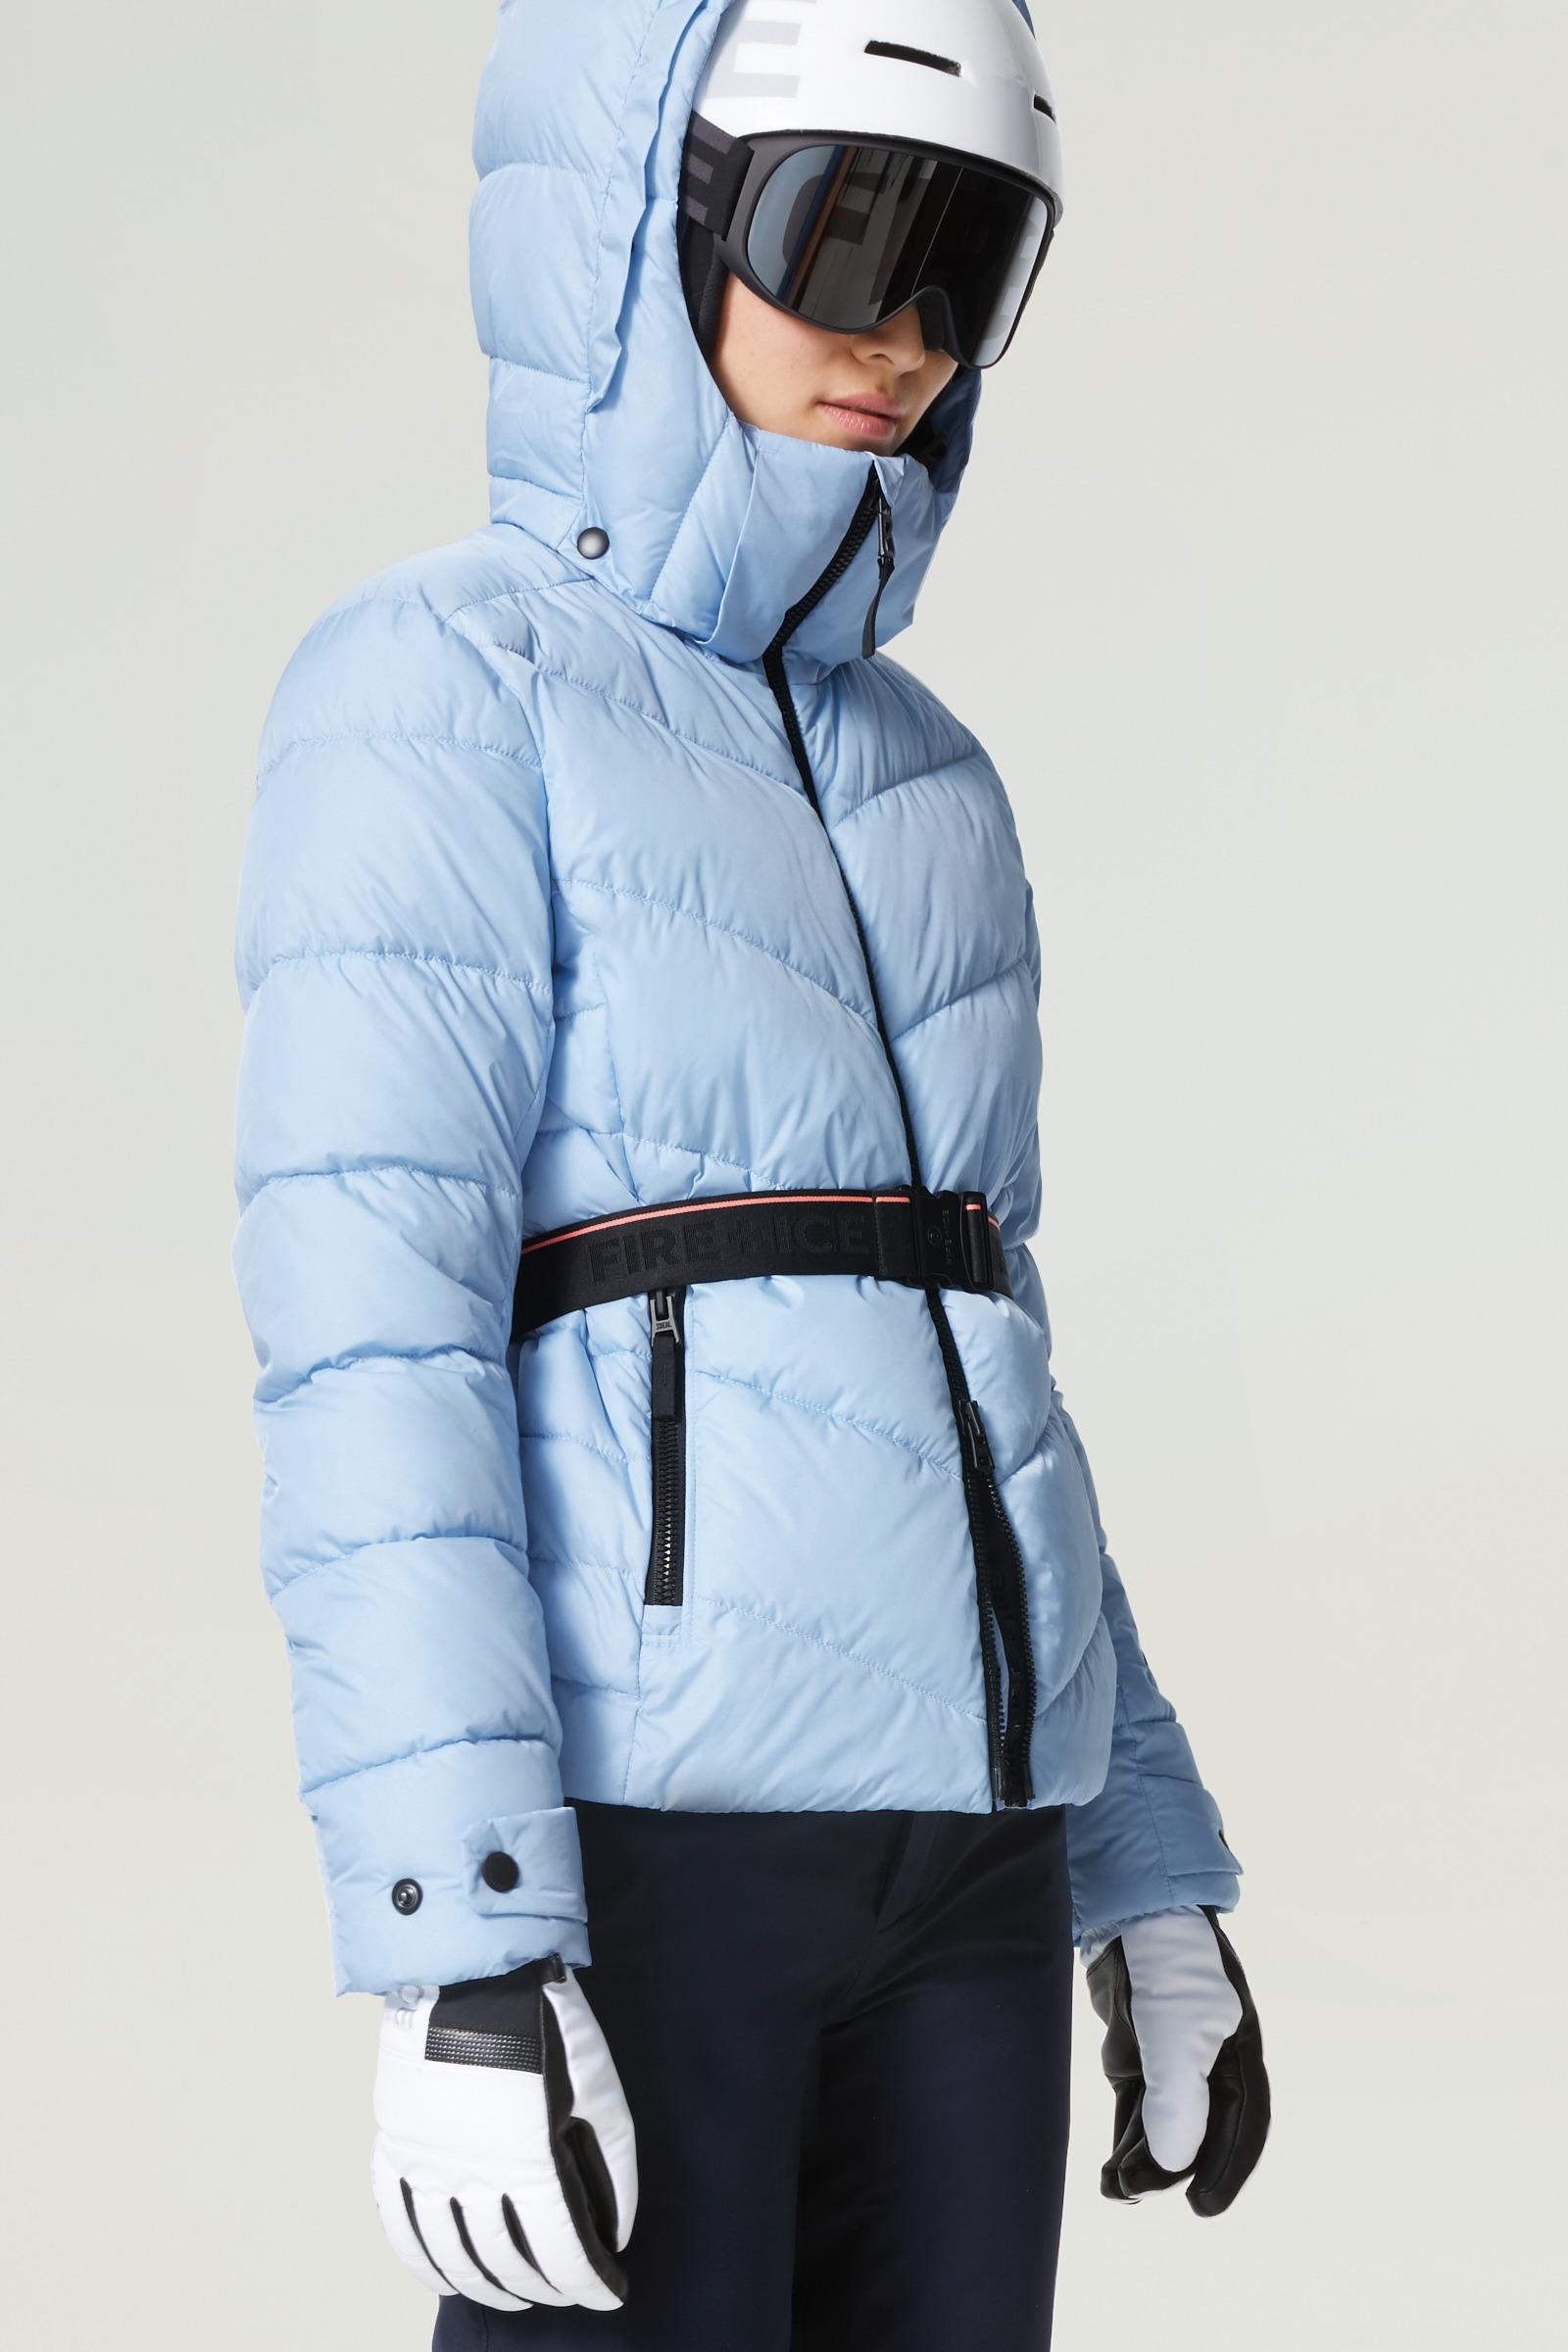 Bogner Saelly Ski Jacket in Blue | Lyst